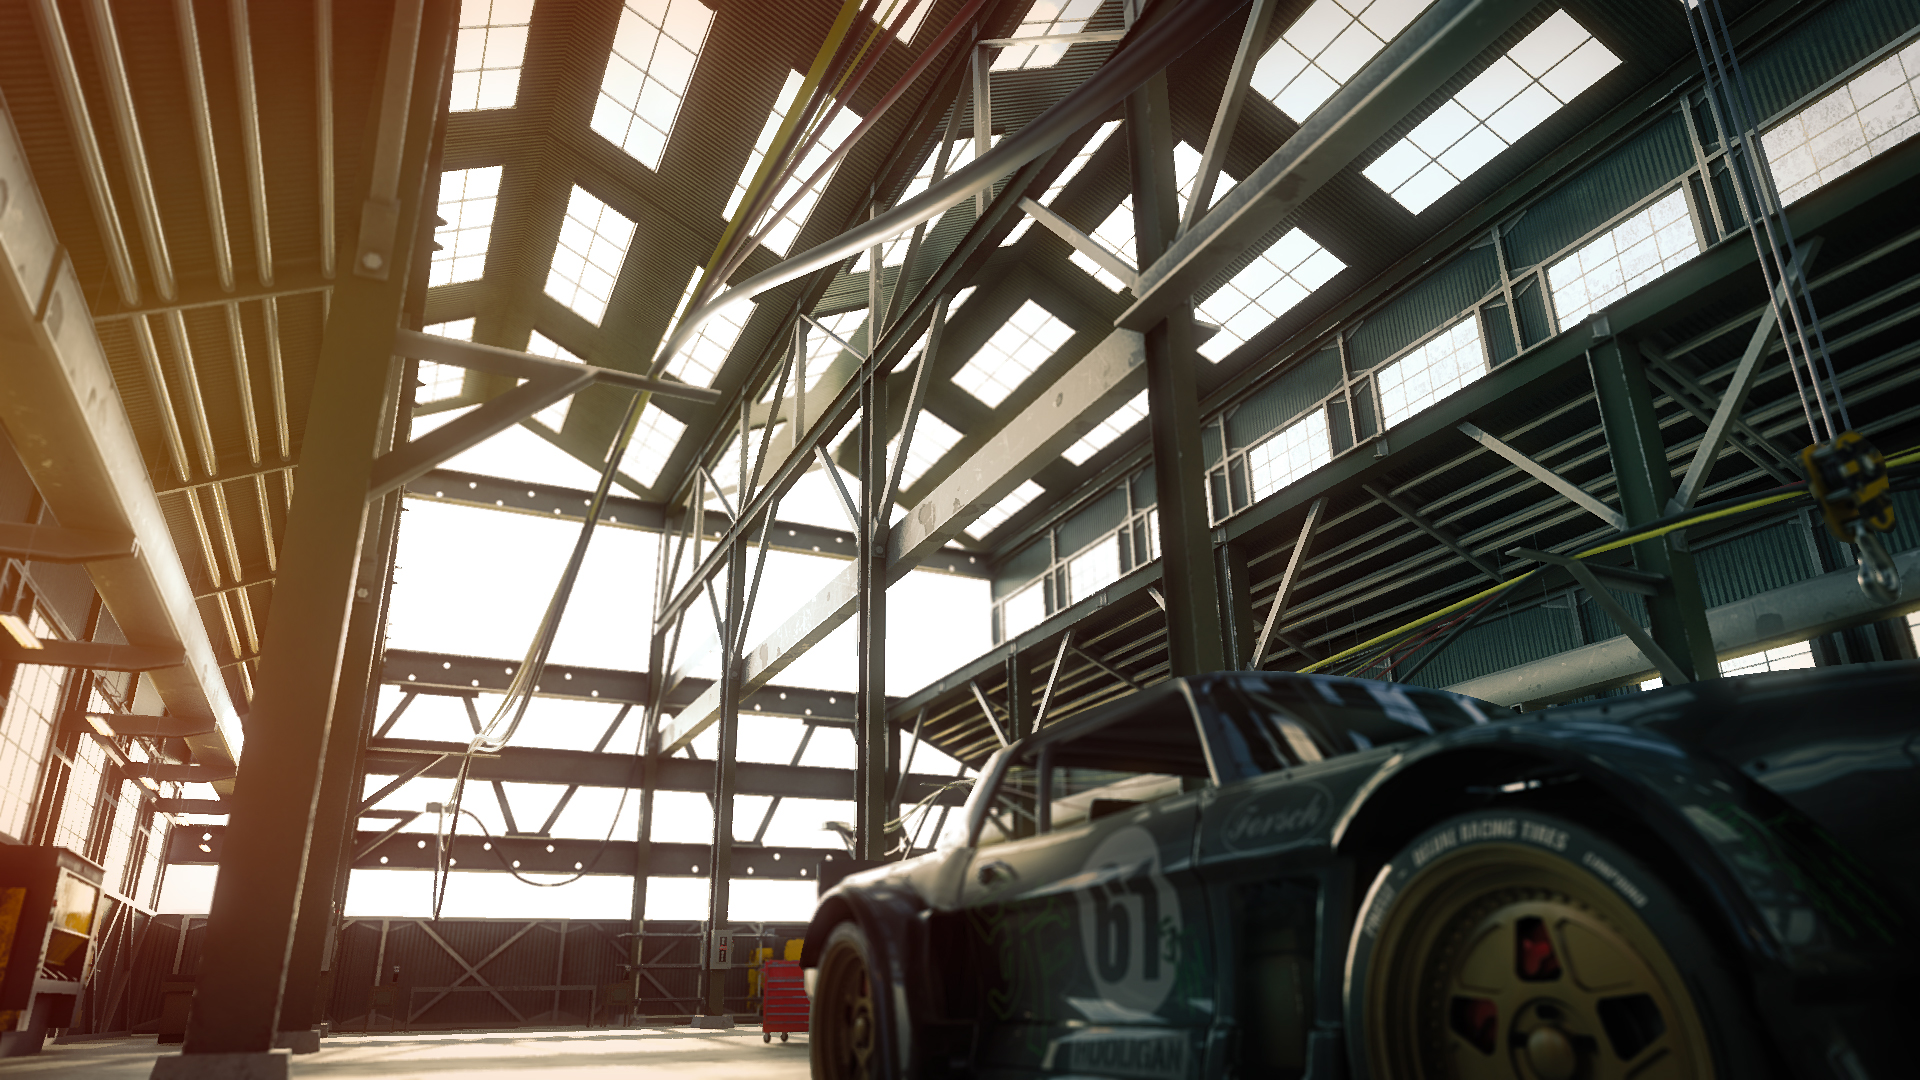 Industrial Garage by: DarkEdgeDesign, 3D Models by Daz 3D